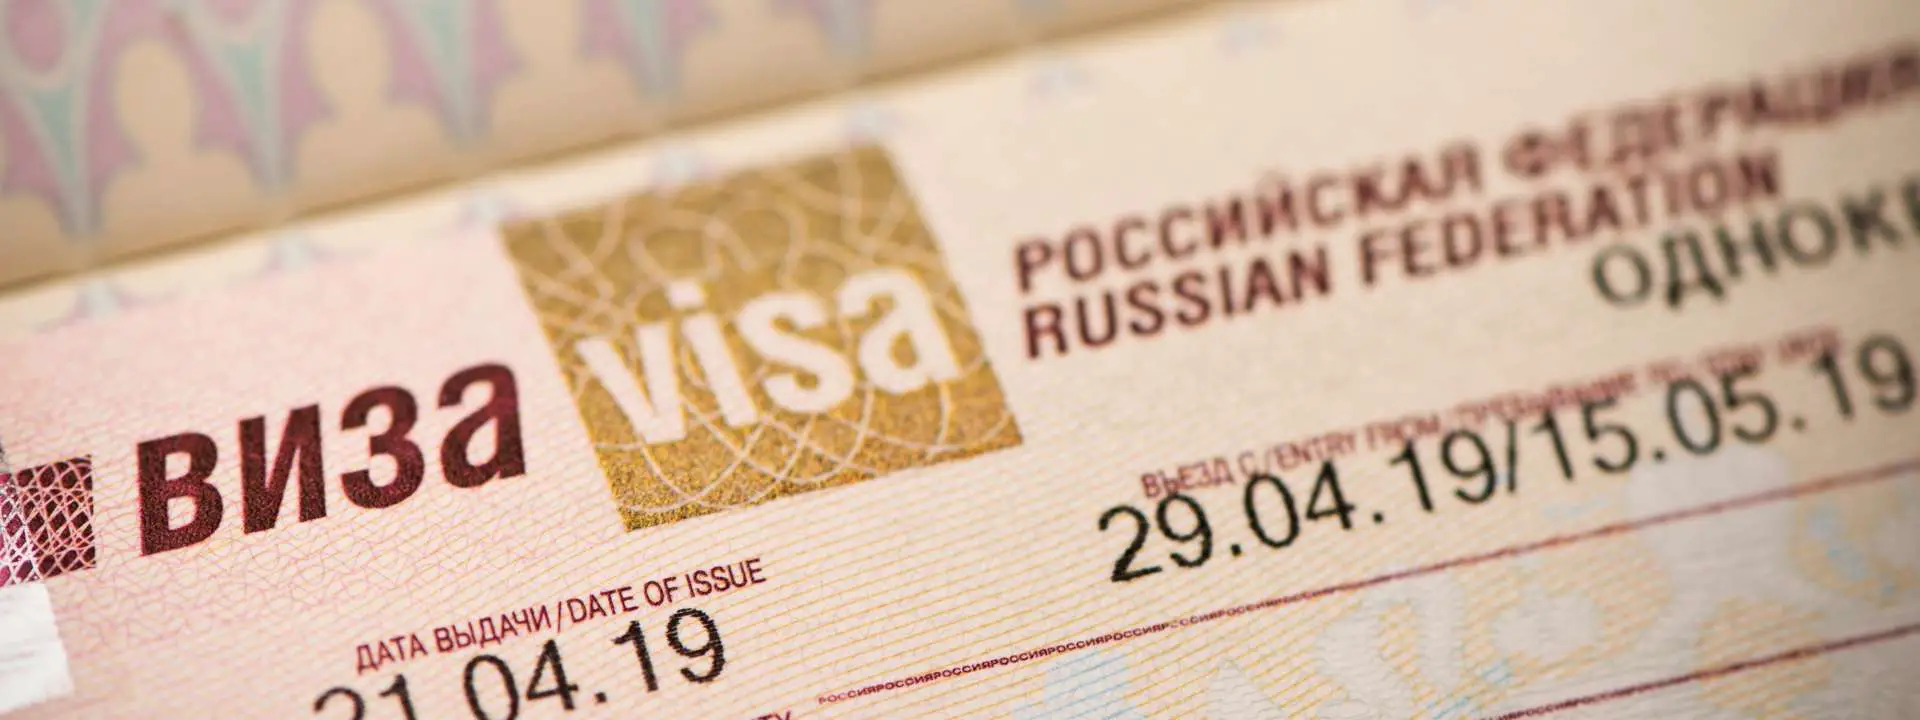 russia tourist visa vfs